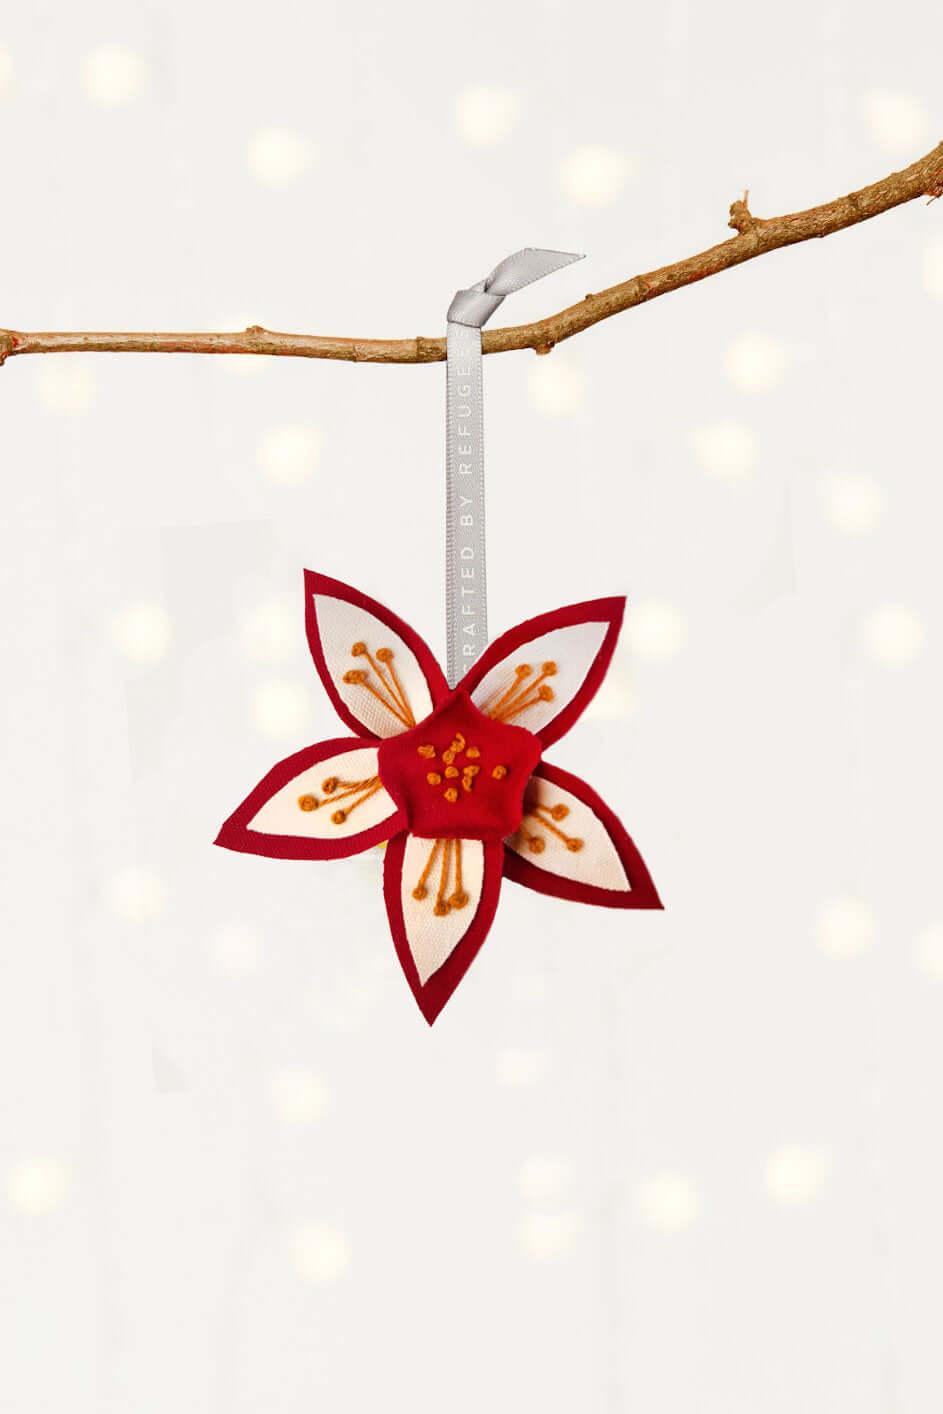 Weihnachtsschmuck "Flower of Life" vom Projekt MADE51 (UNHCR)